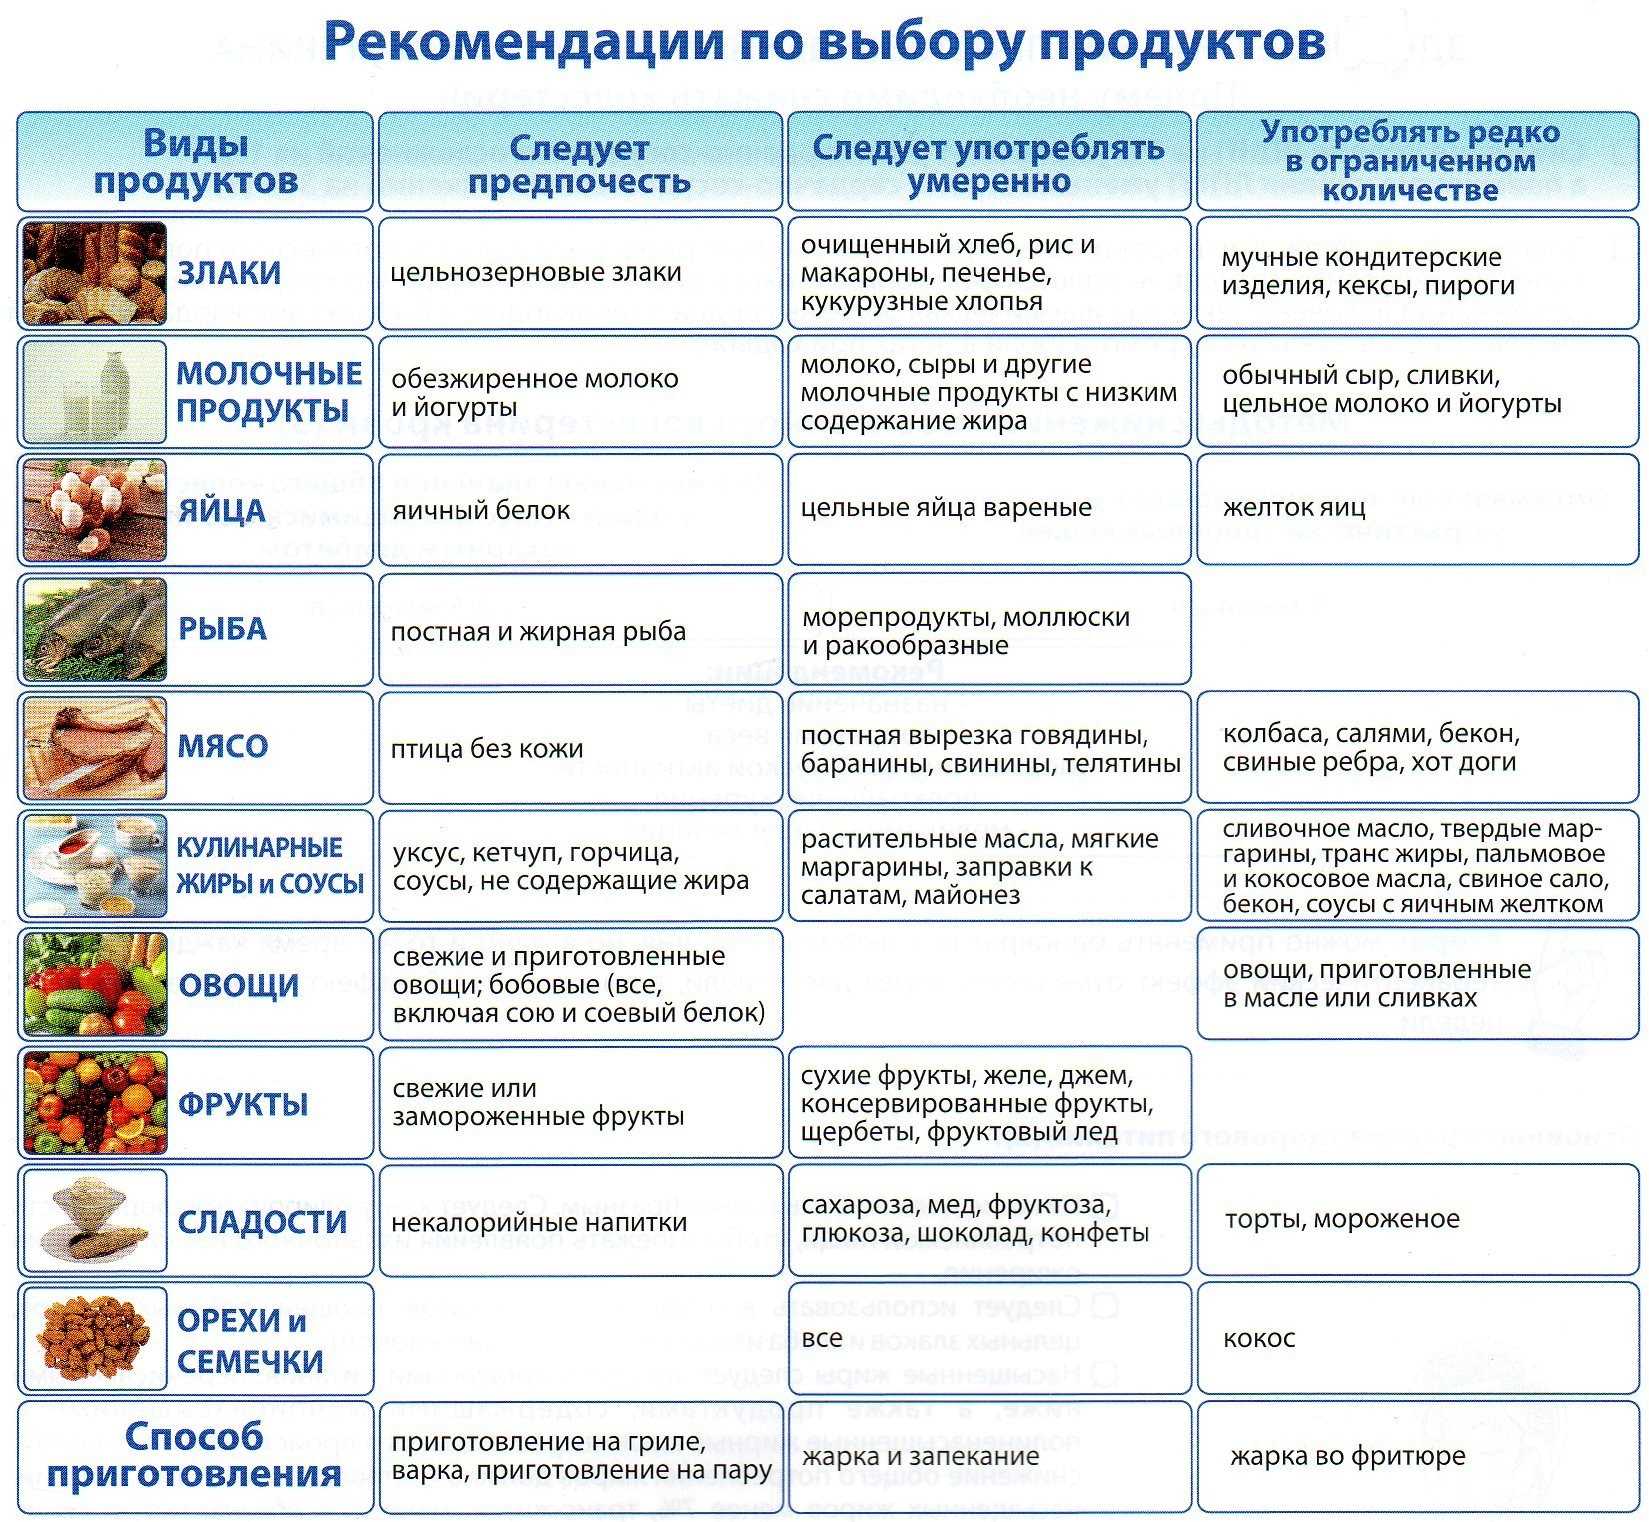 Кремлевская диета для похудения: особенности, преимущества, правила, меню на каждый день, на неделю, результаты. баллы продуктов кремлевской диеты для похудения и рецепты готовых блюд: описание